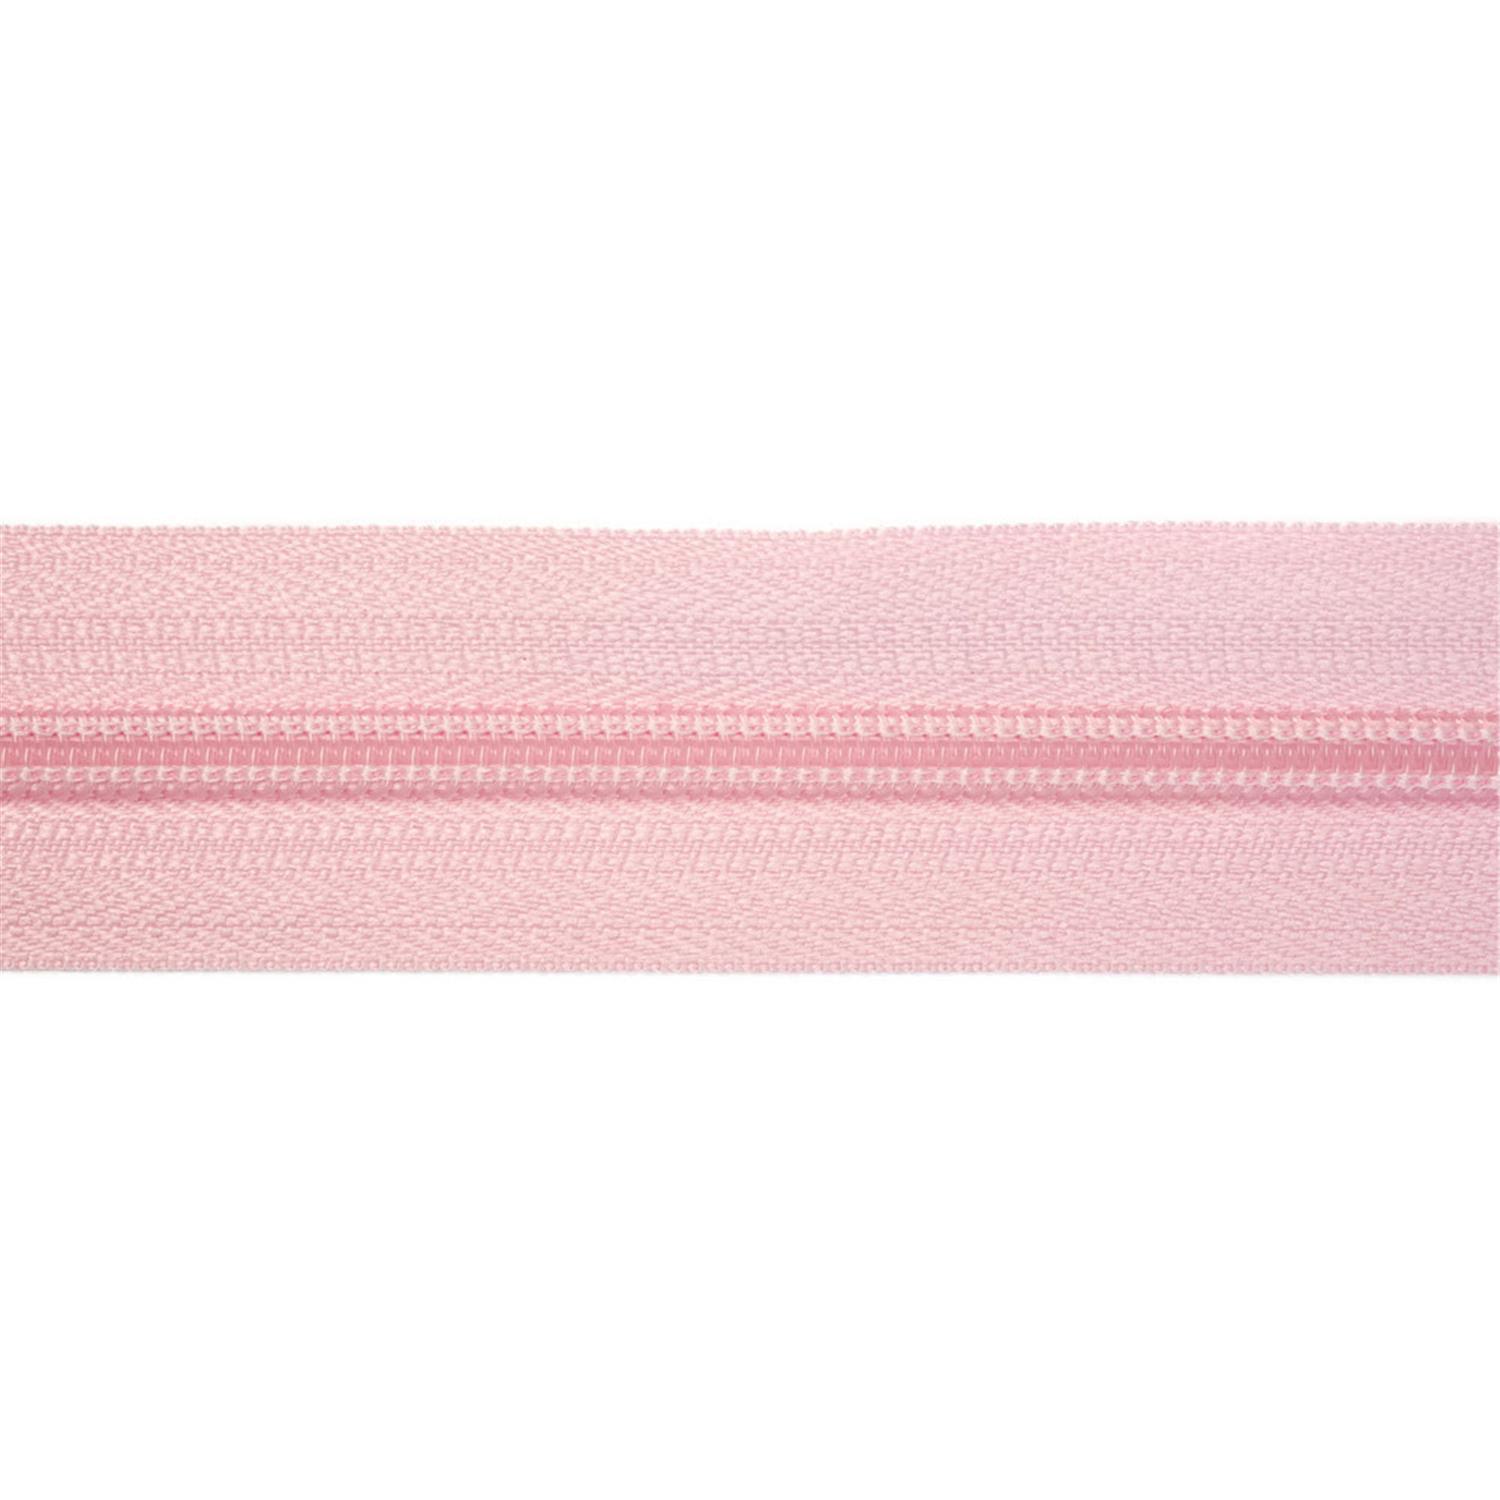 Reißverschluss endlos 3mm rosa #62 5 Meter